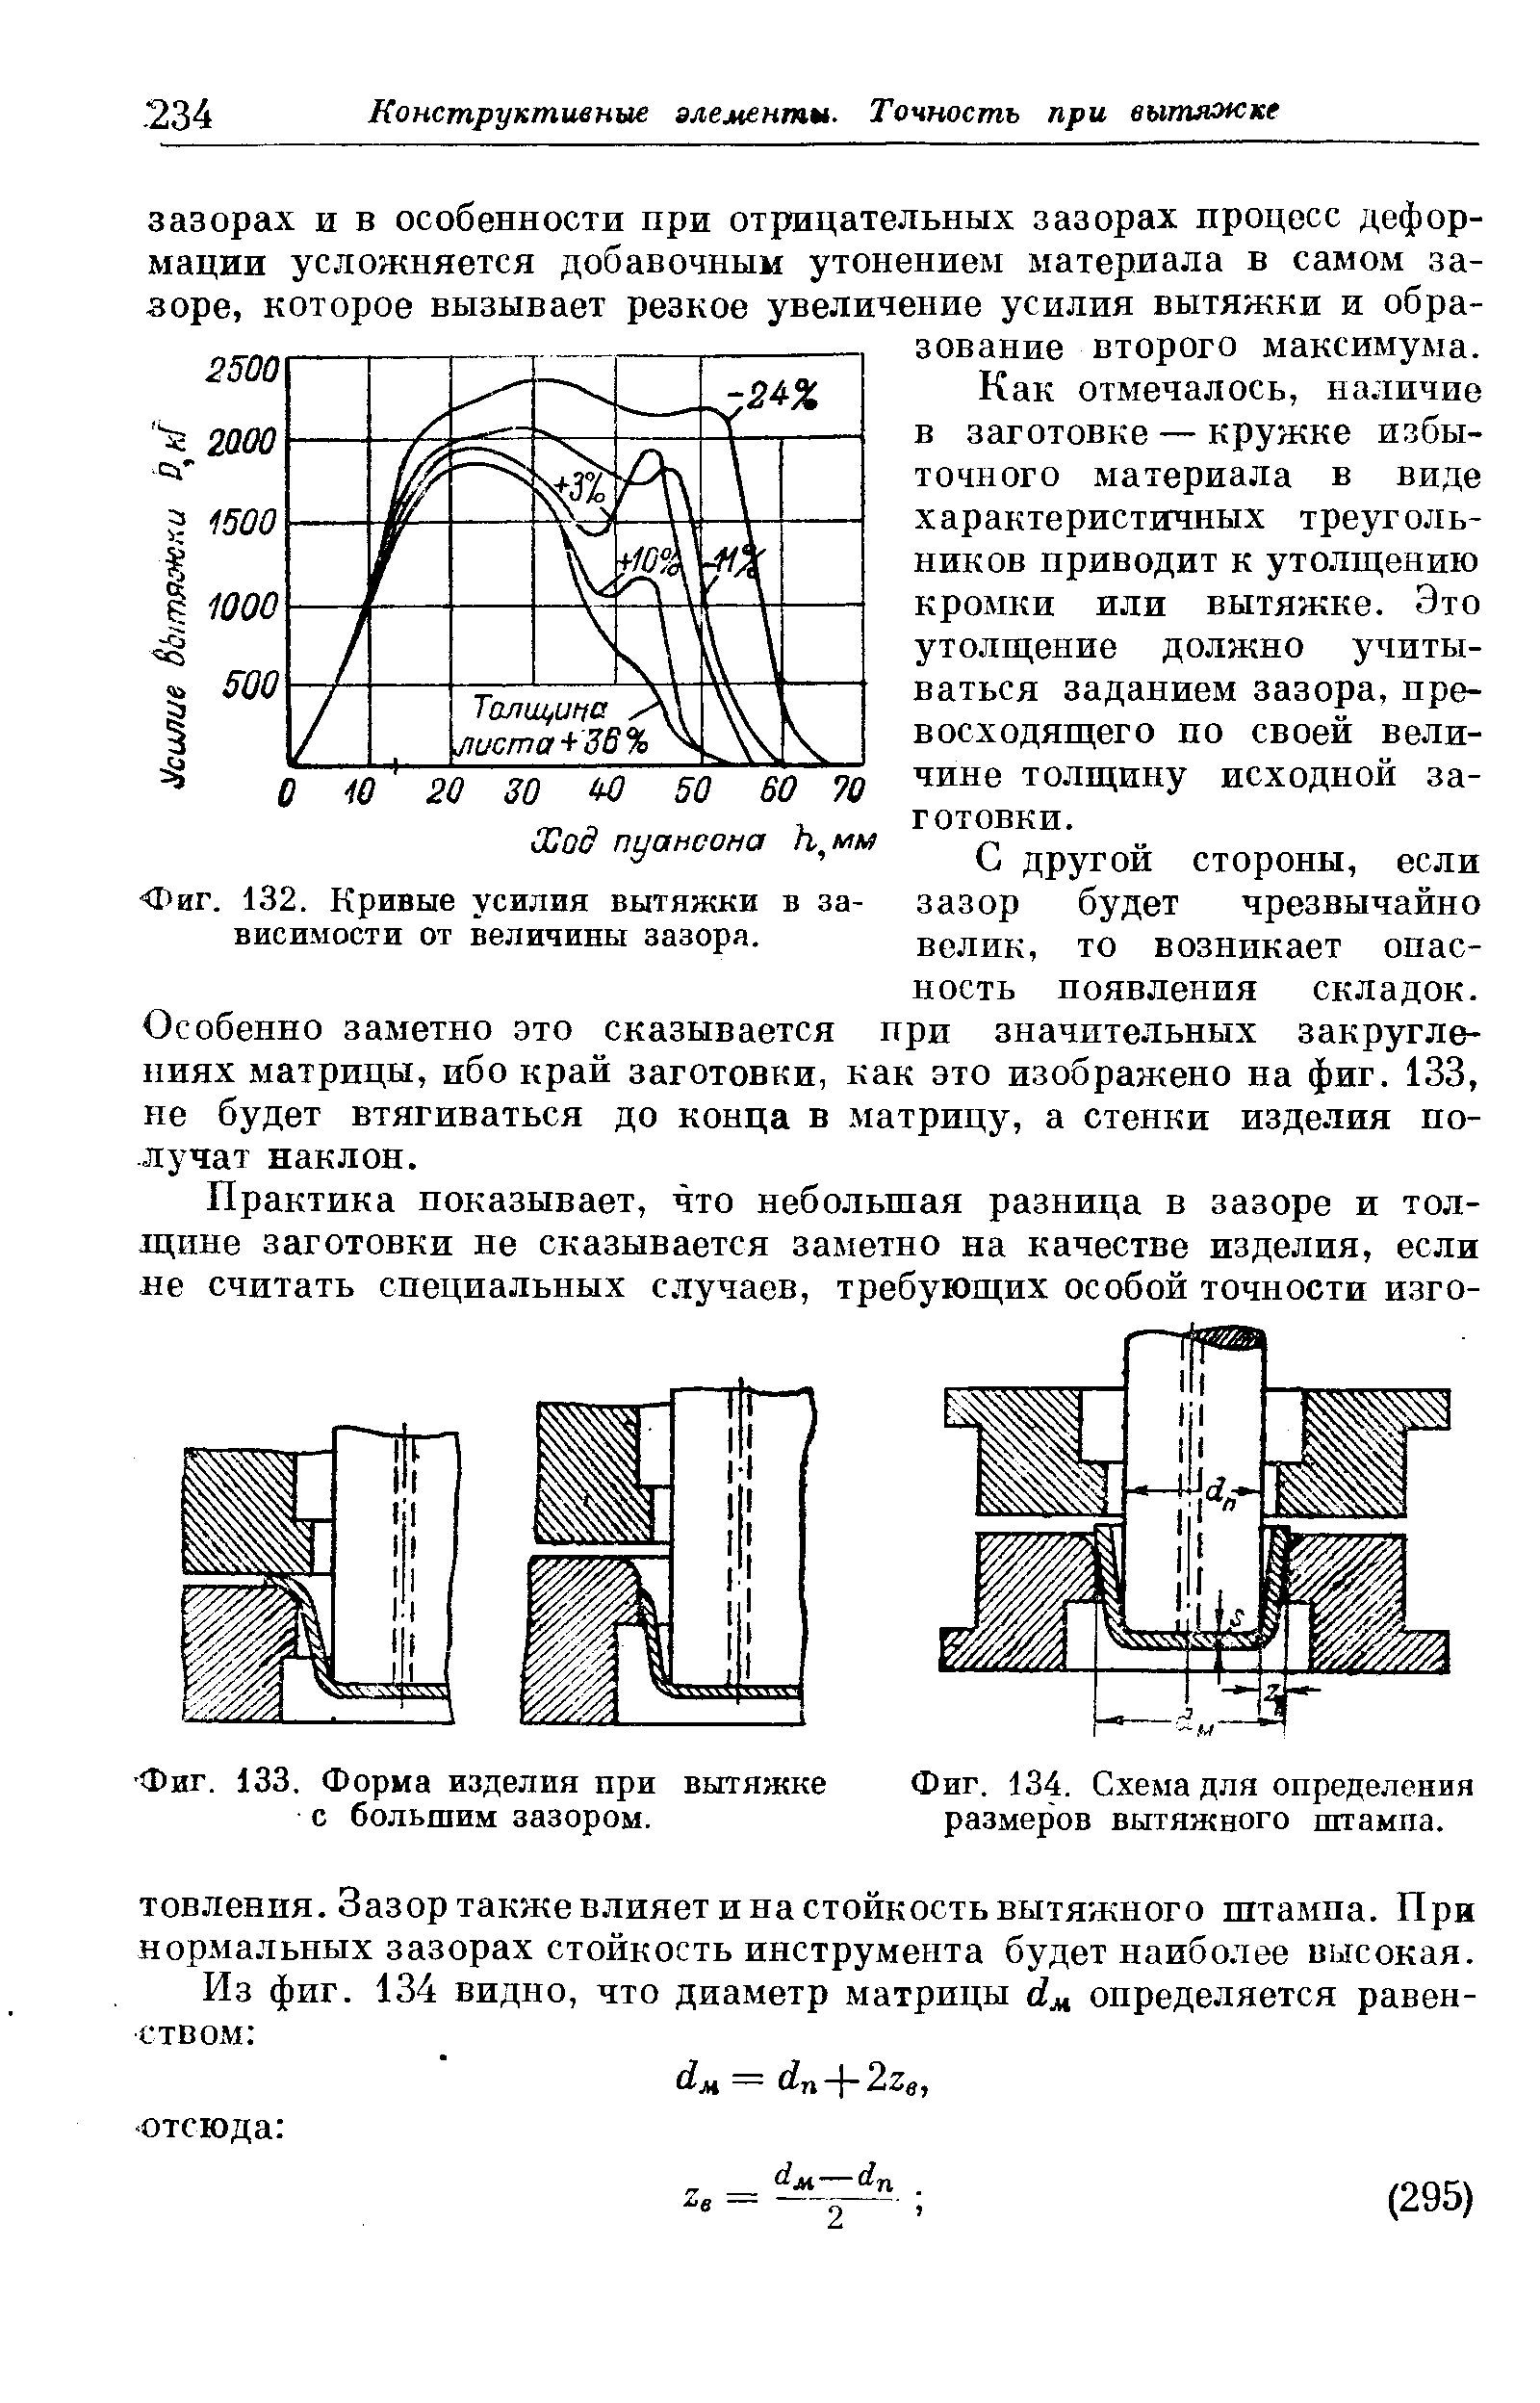 Фиг. 134. Схема для определения размеров вытяжного штампа.
